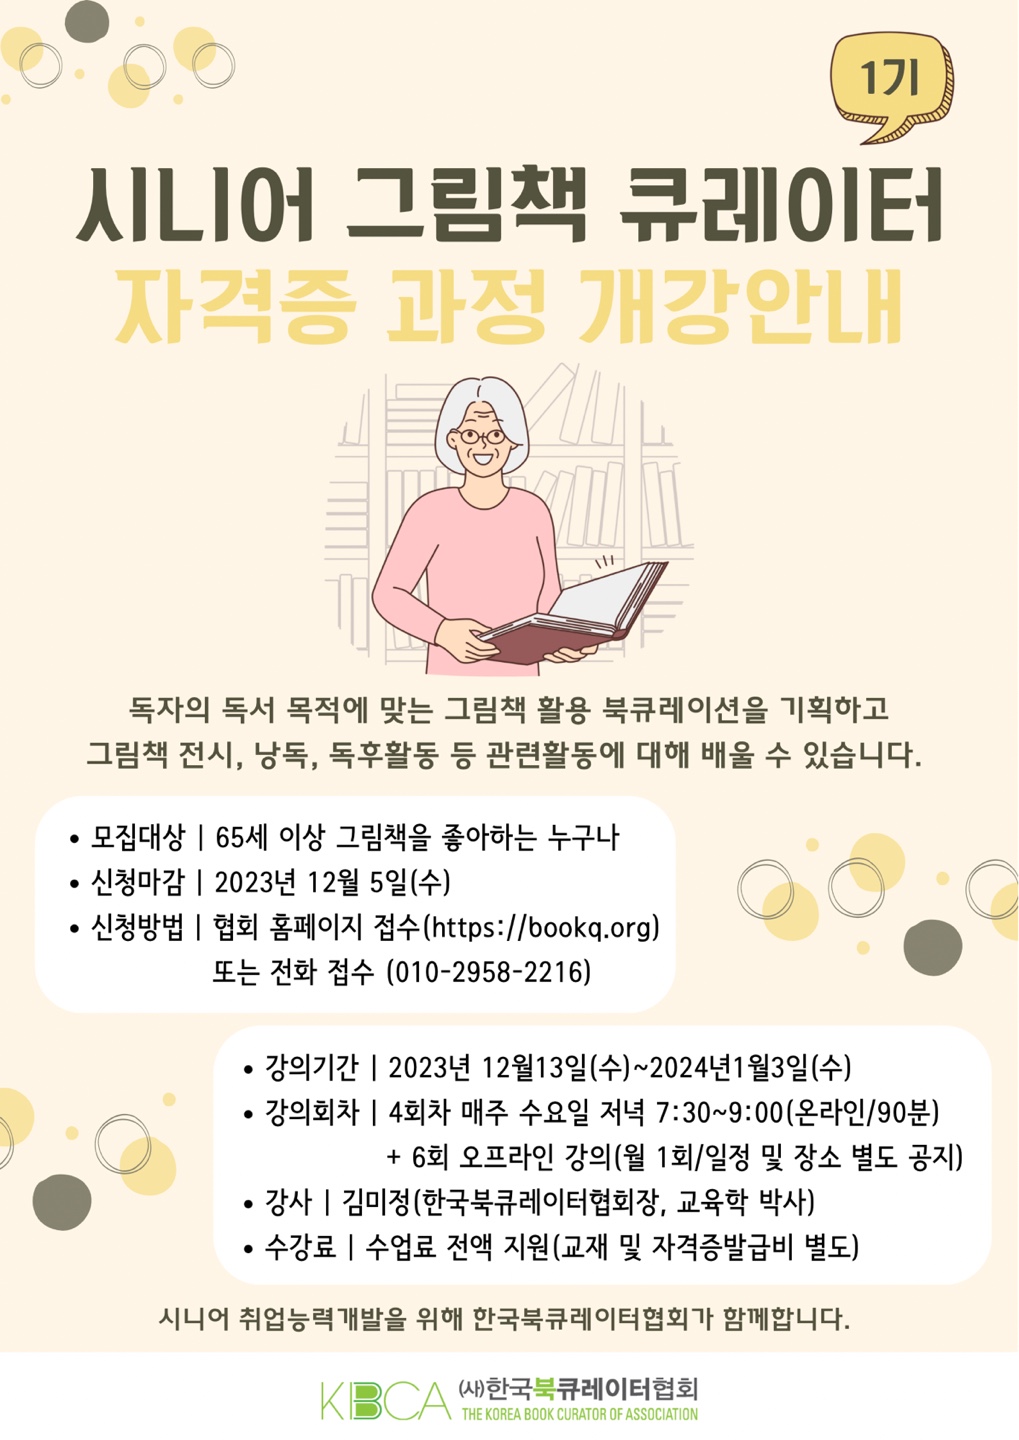 시니어 그림책 큐레이터자격증과정 12월 13일